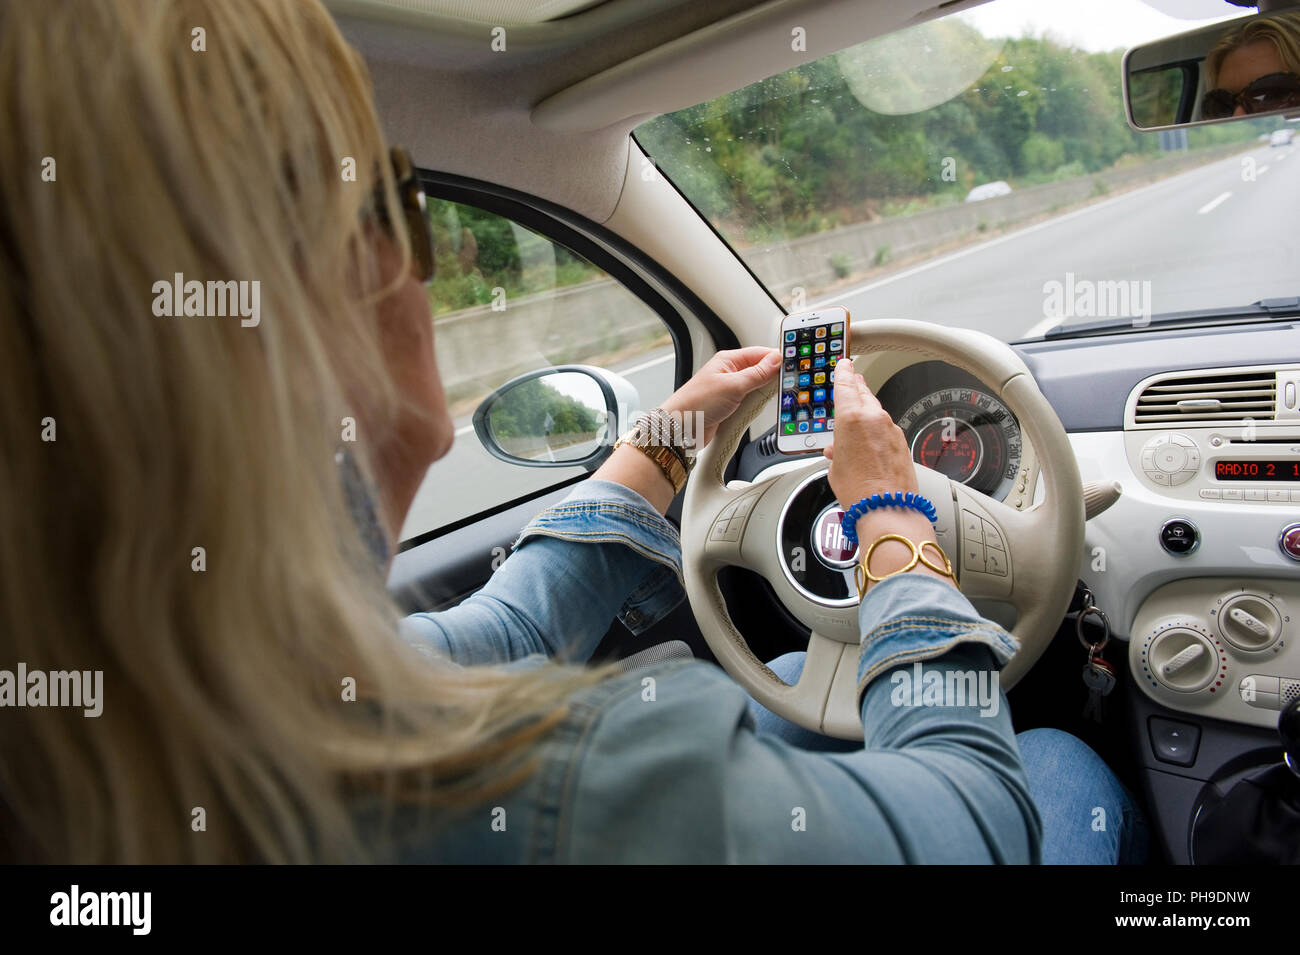 BOTTROP, Germania - 16 agosto 2018: una donna bionda sta verificando il suo smartphone mentre si guida su una strada in piena velocità. Foto Stock